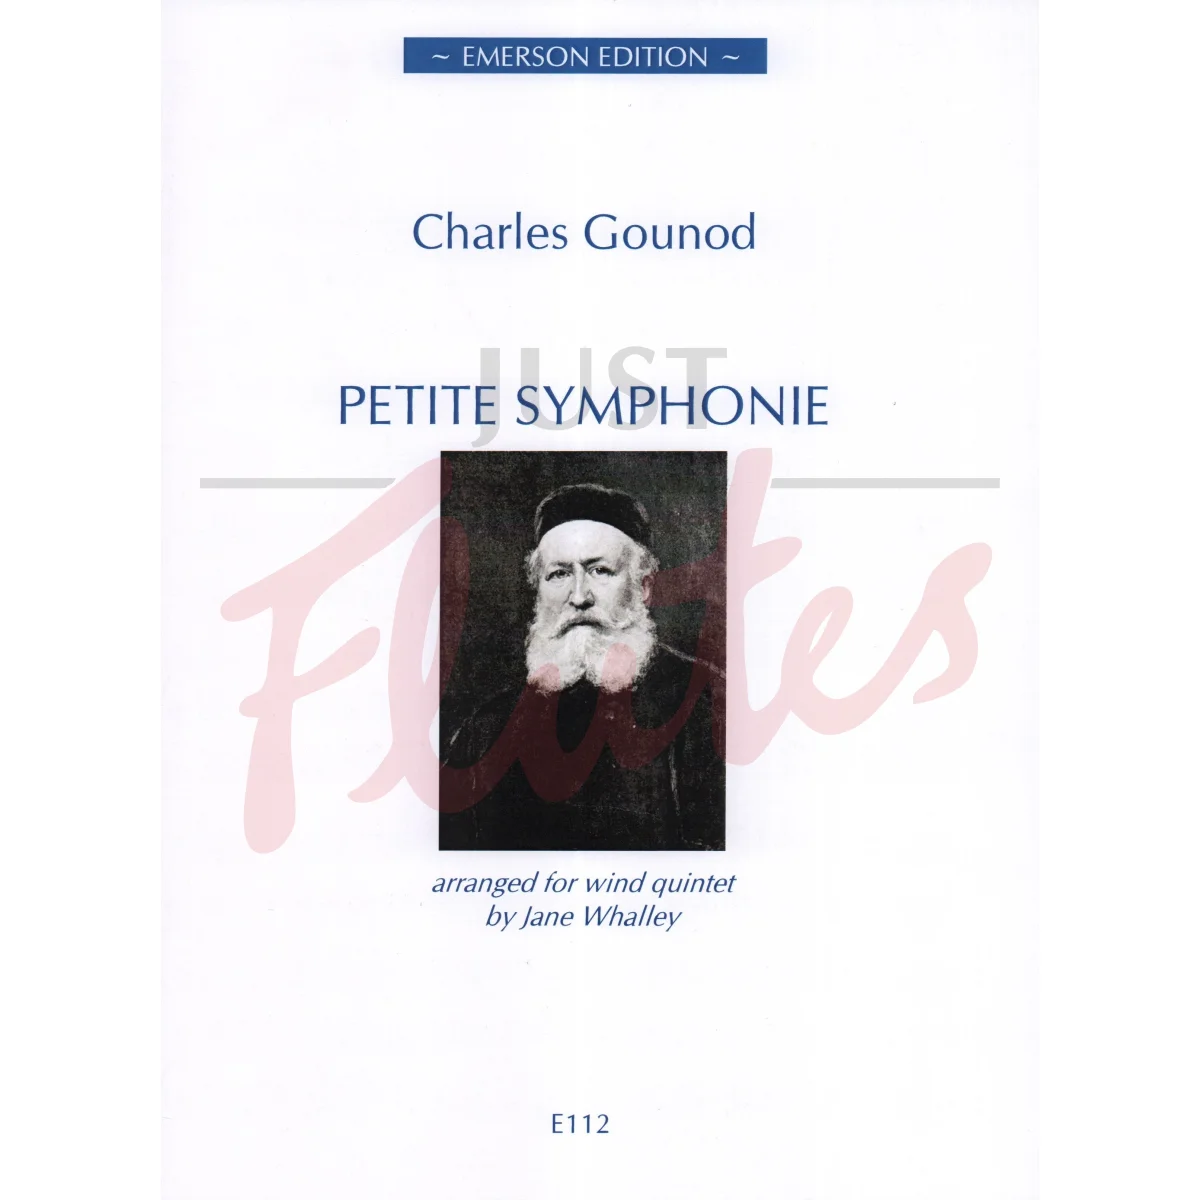 Petite Symphonie for Wind Quintet